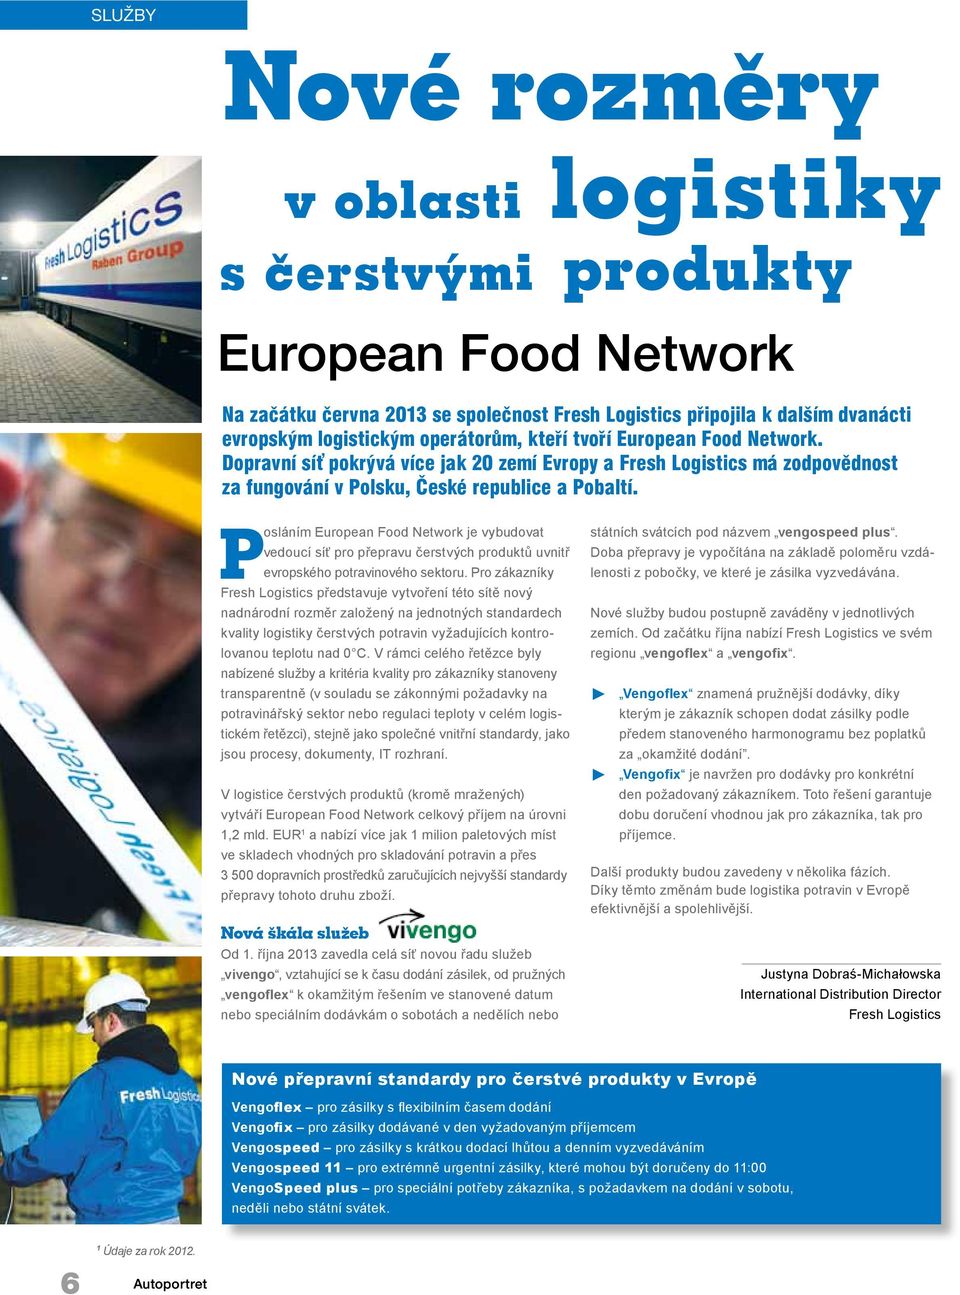 Posláním European Food Network je vybudovat vedoucí síť pro přepravu čerstvých produktů uvnitř evropského potravinového sektoru.